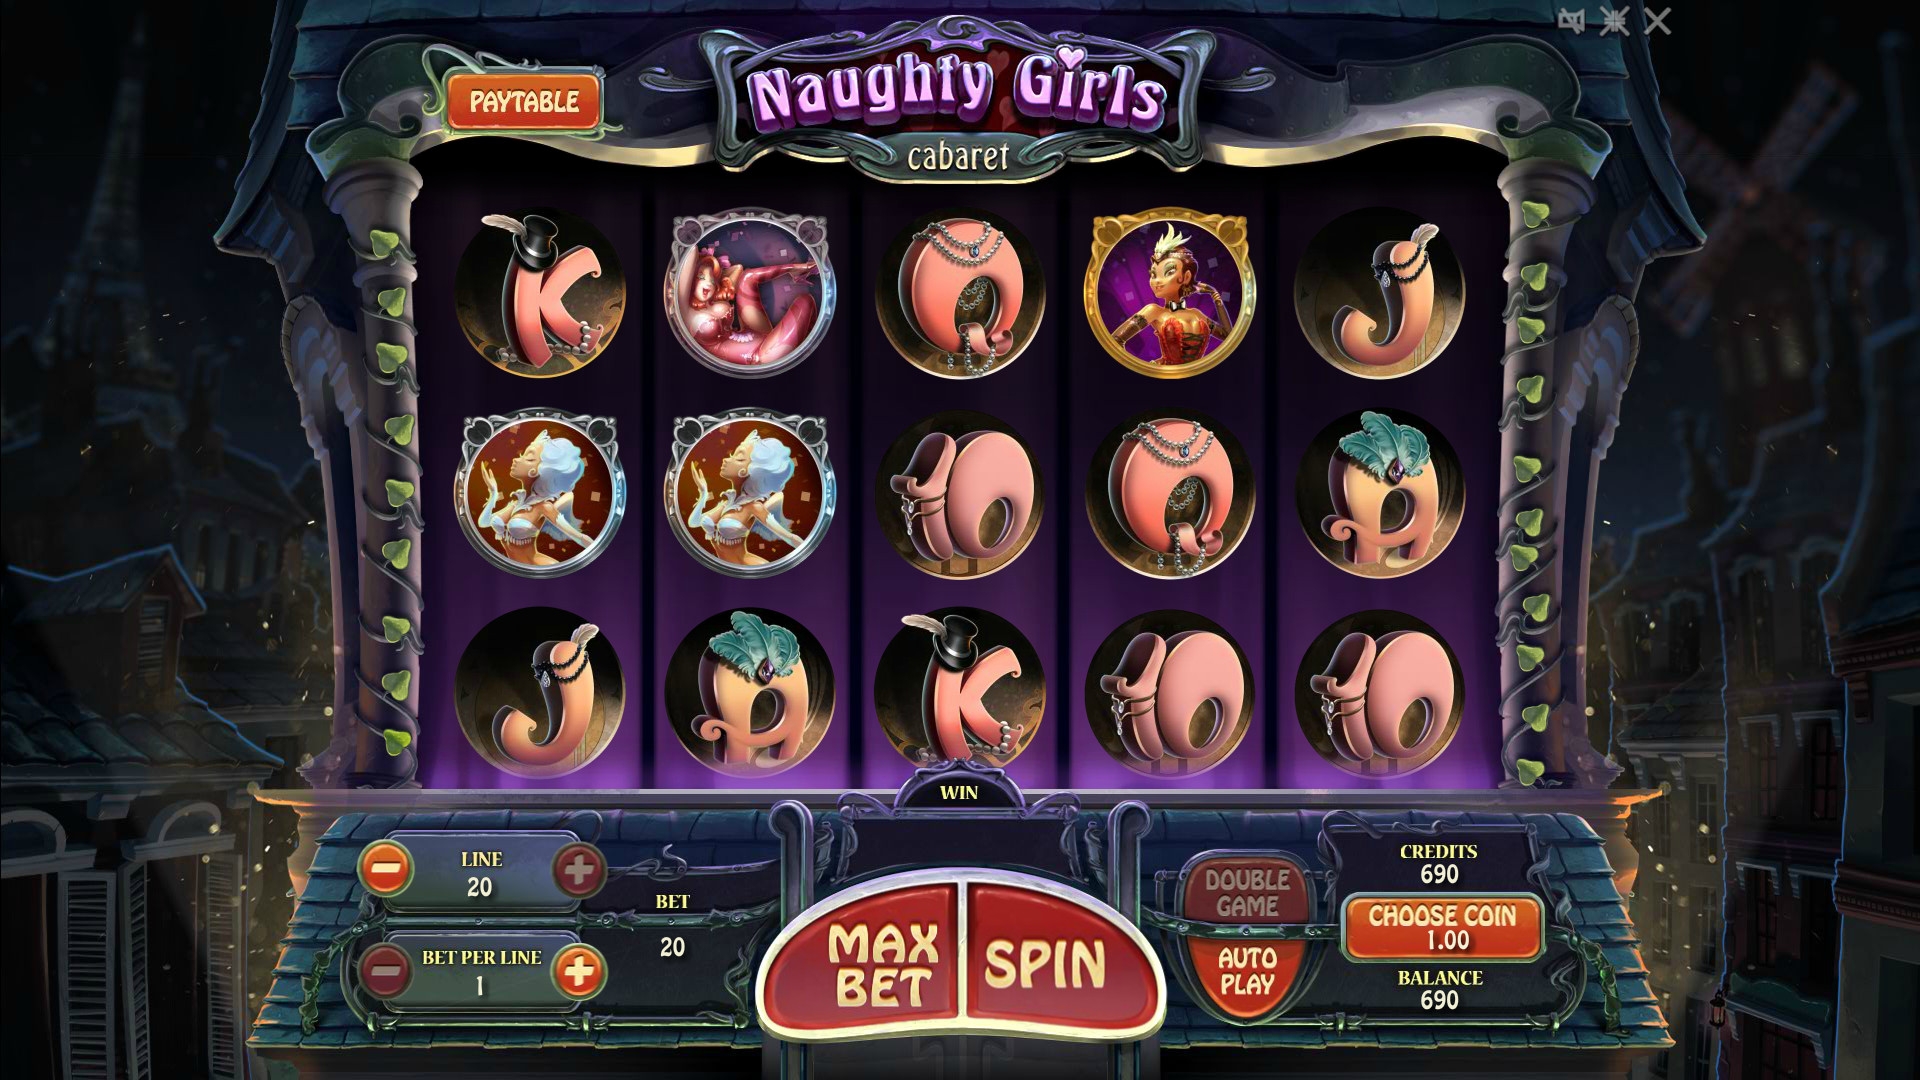 Naughty Girls Cabaret (Naughty Girls Cabaret) from category Slots